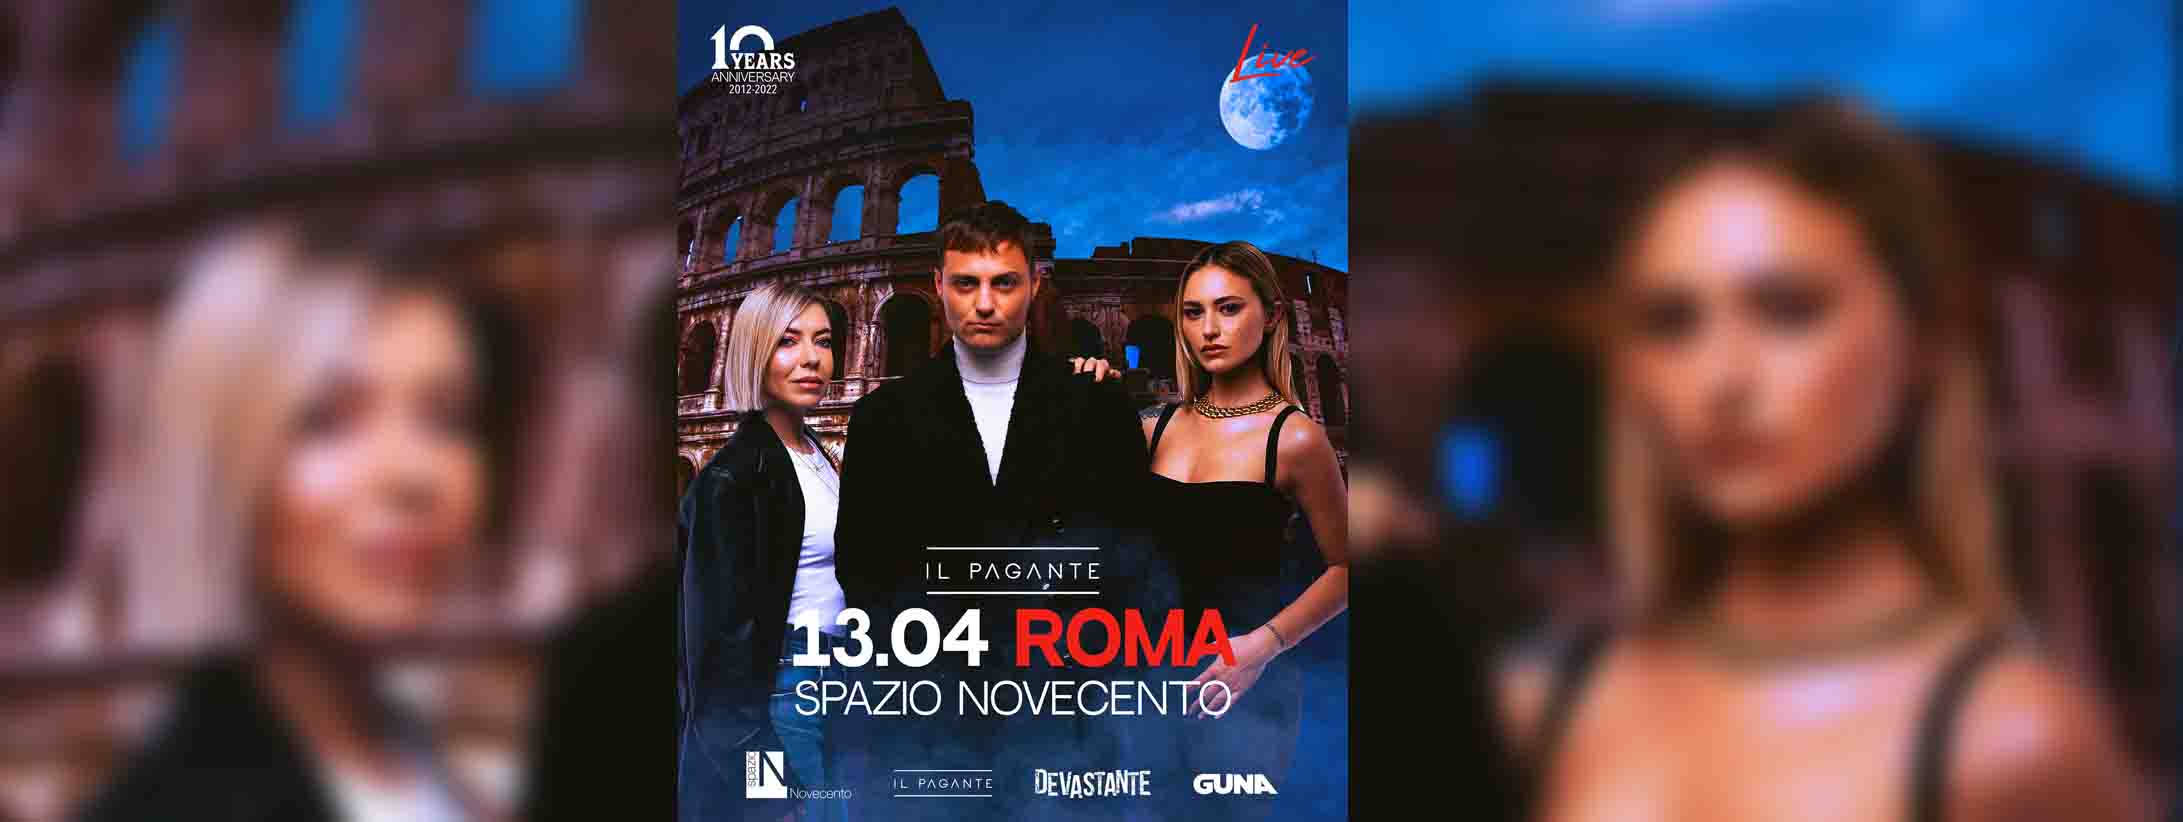 Il-pagante-spazio-novecento-roma